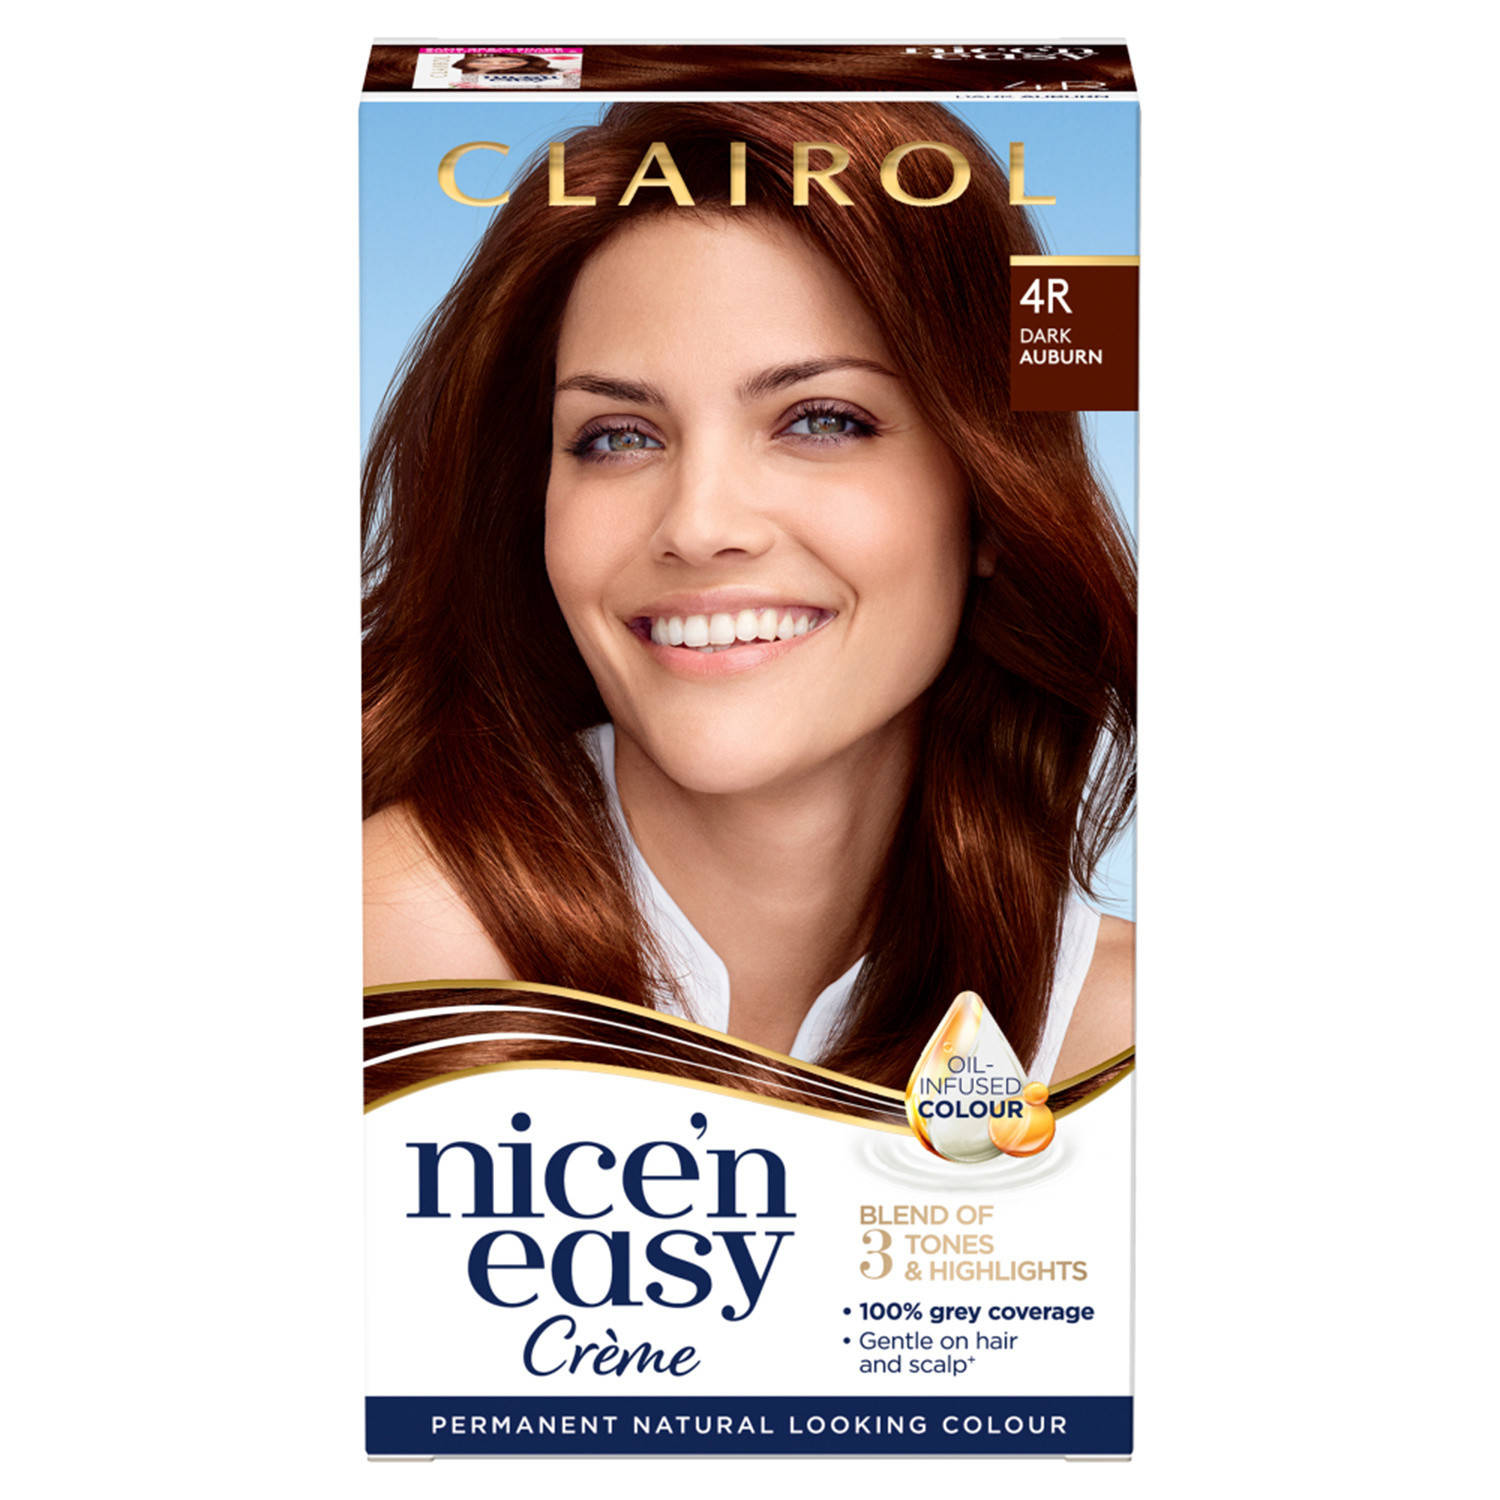 Clairol Nice' n Easy Crème Natural Looking Oil Infused Permanent Hair Dye 177ml (Various Shades) - 4R Dark Auburn